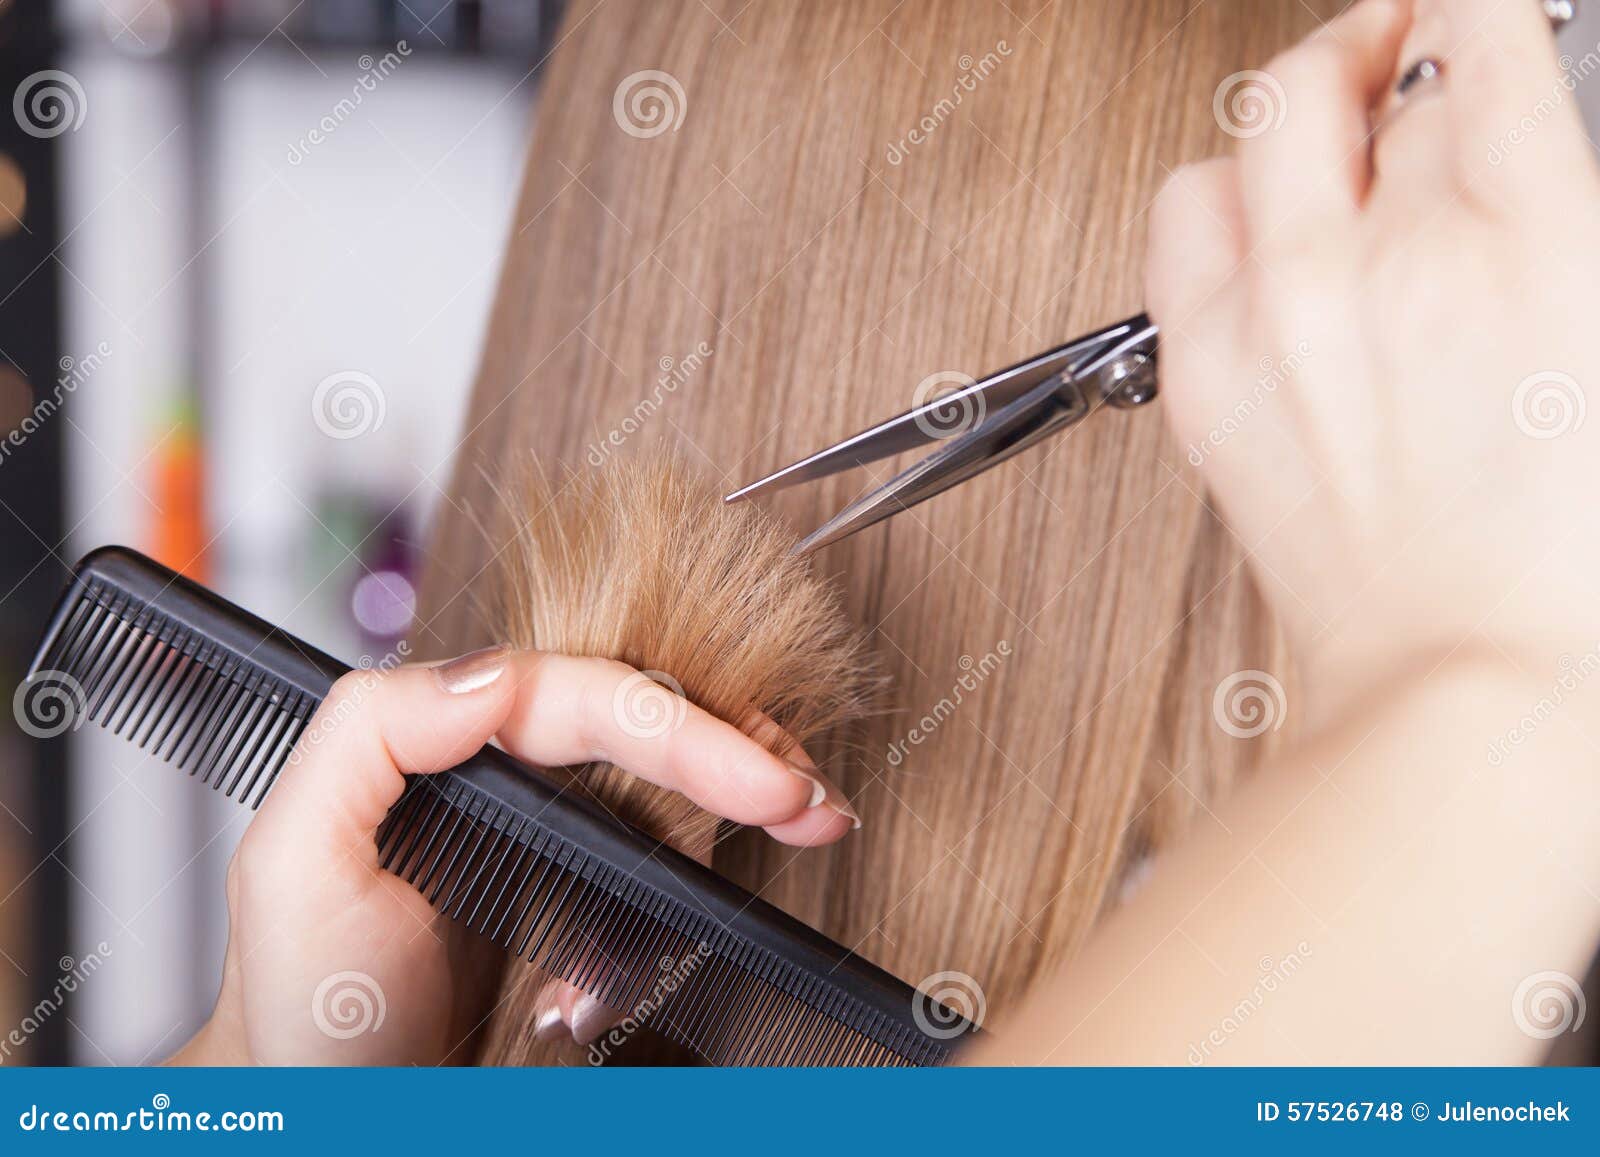 hairdresser cut blond hair of a woman